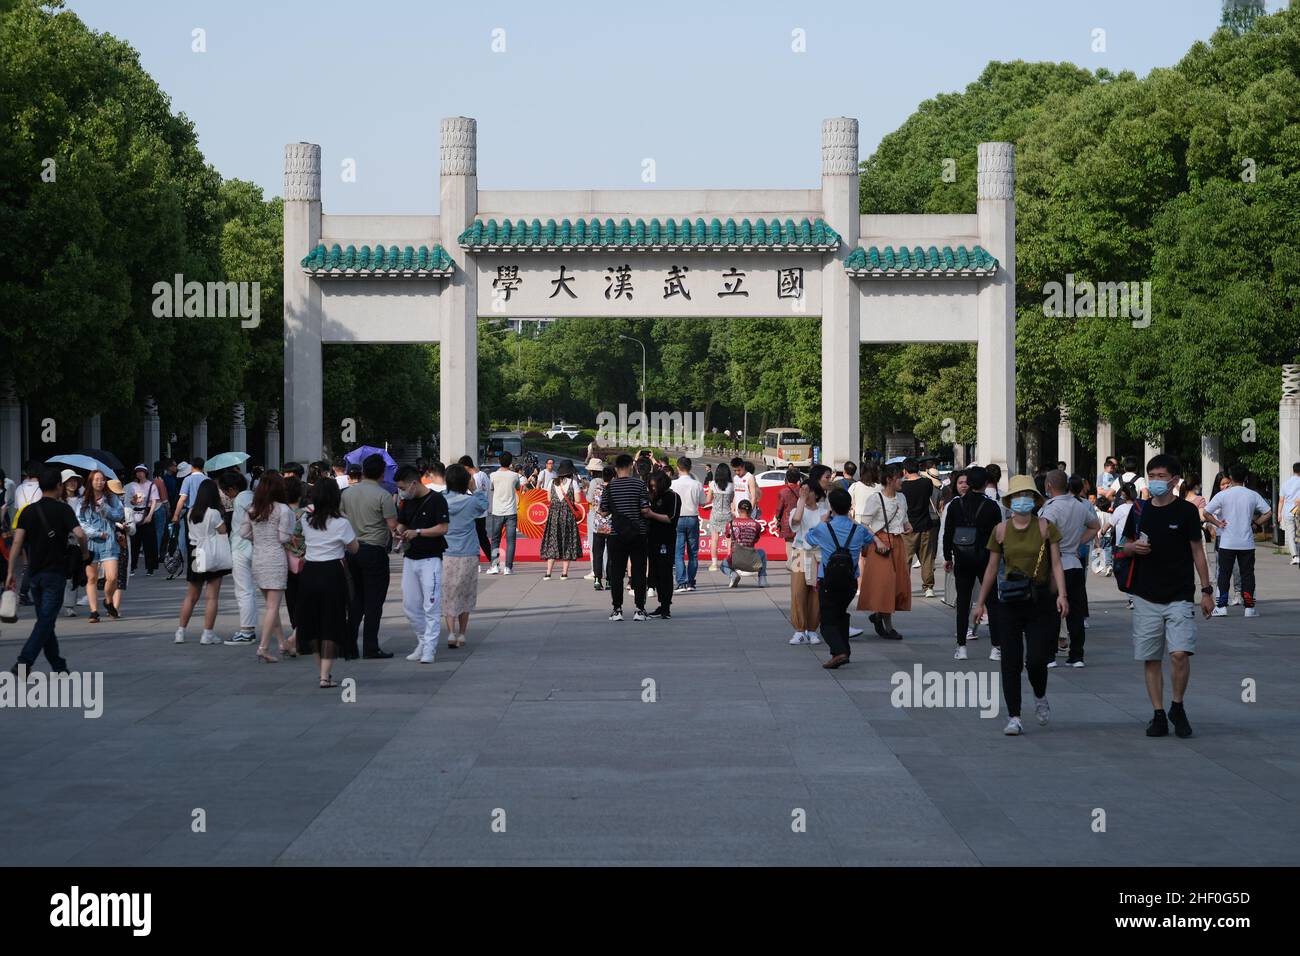 Façade de la porte du campus de l'Université de Wuhan.Avec les étudiants et les touristes.Célèbre université clé et destination de voyage à Wuhan, province de Hubei Banque D'Images